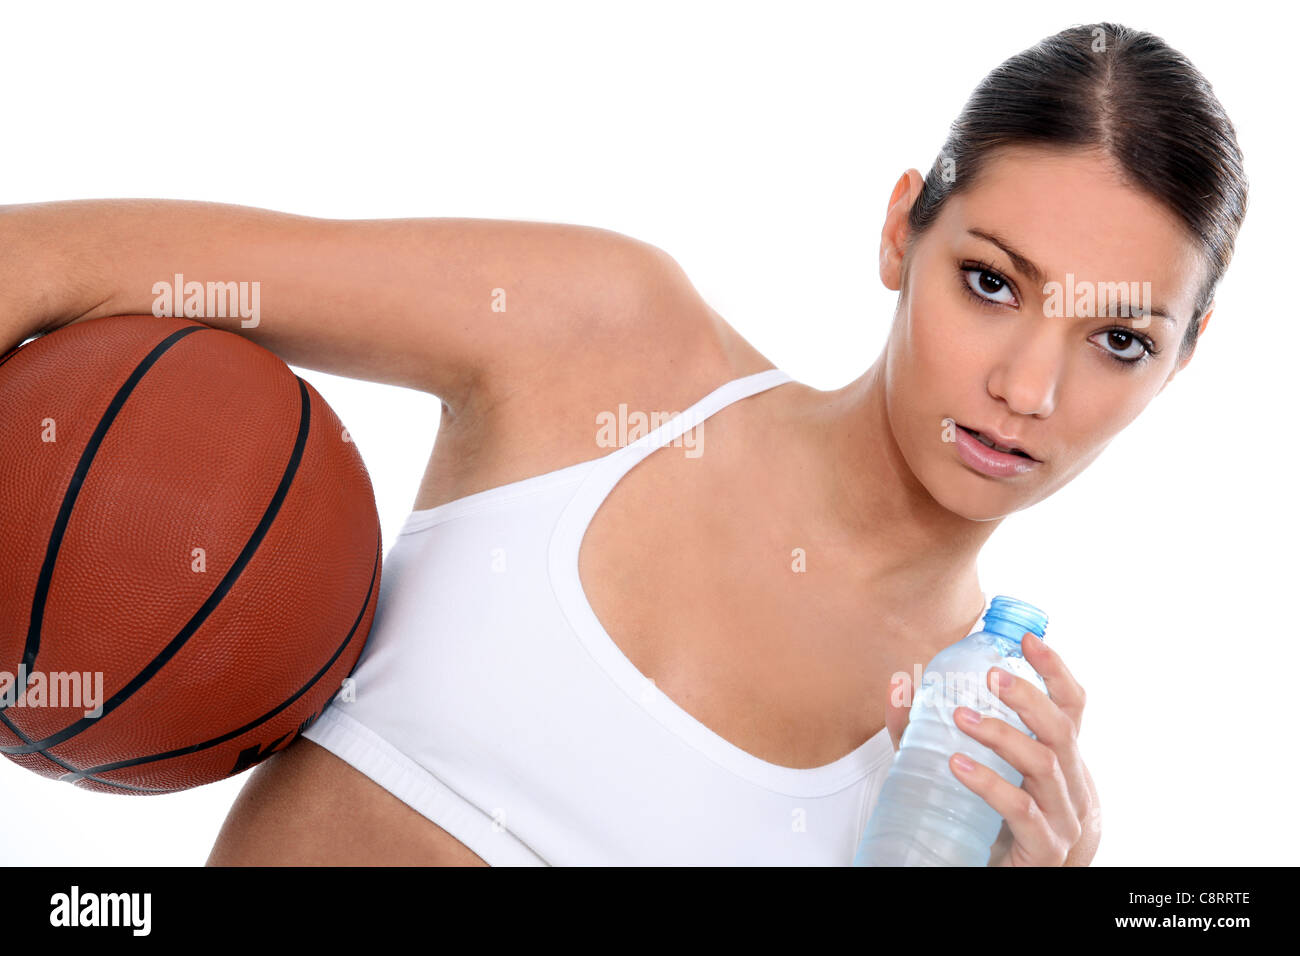 Femme avec une bouteille d'eau et de basket-ball Banque D'Images